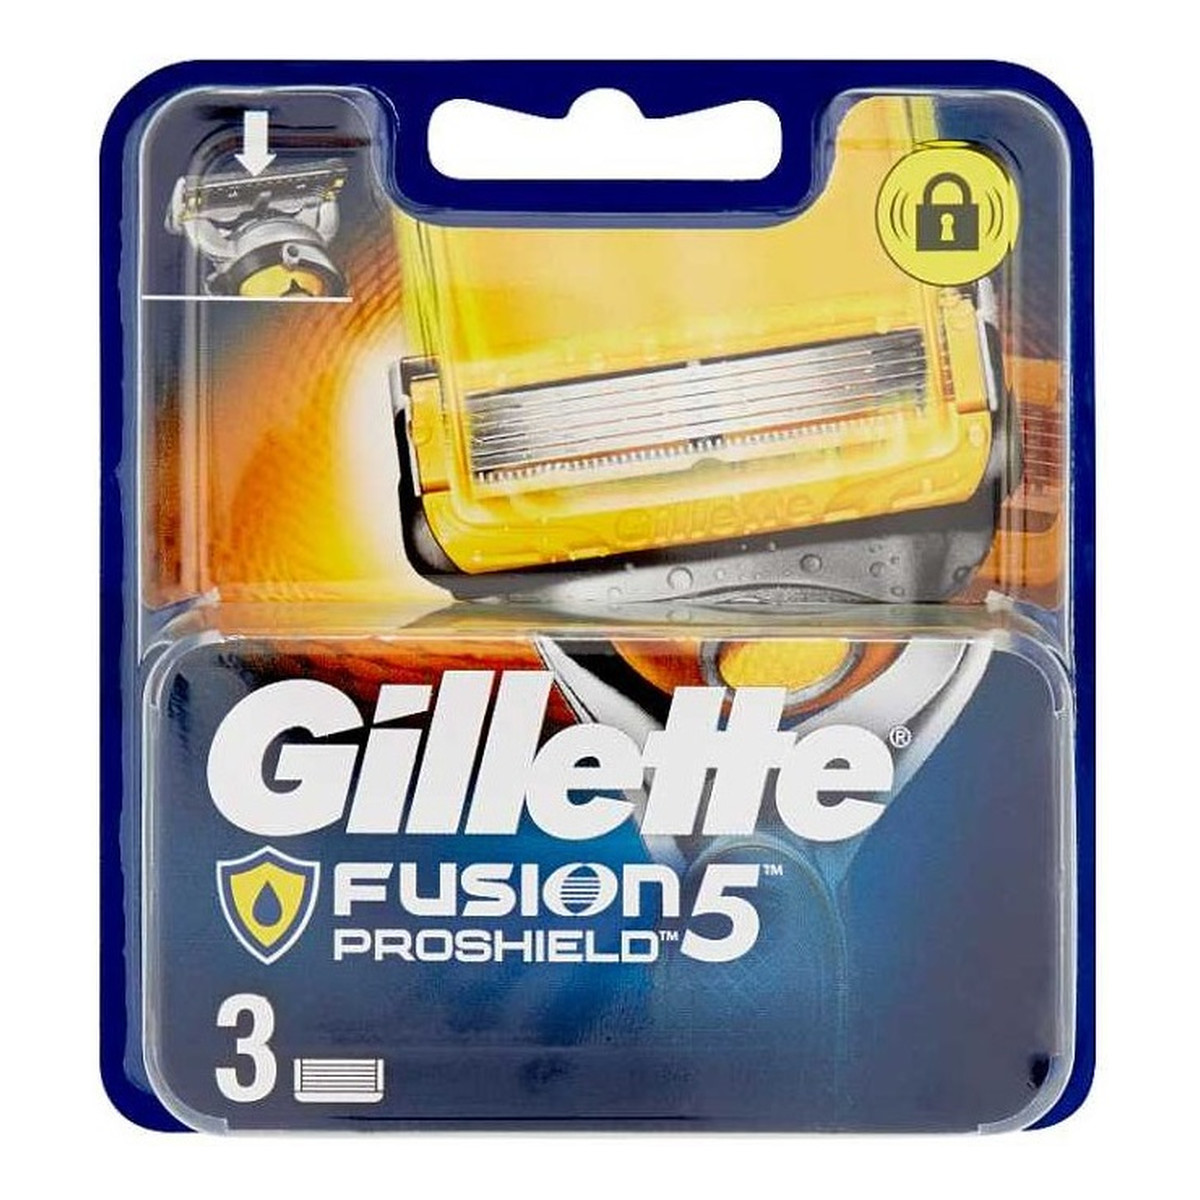 Gillette Fusion5 proshield wymienne ostrza do maszynki do golenia 3szt.